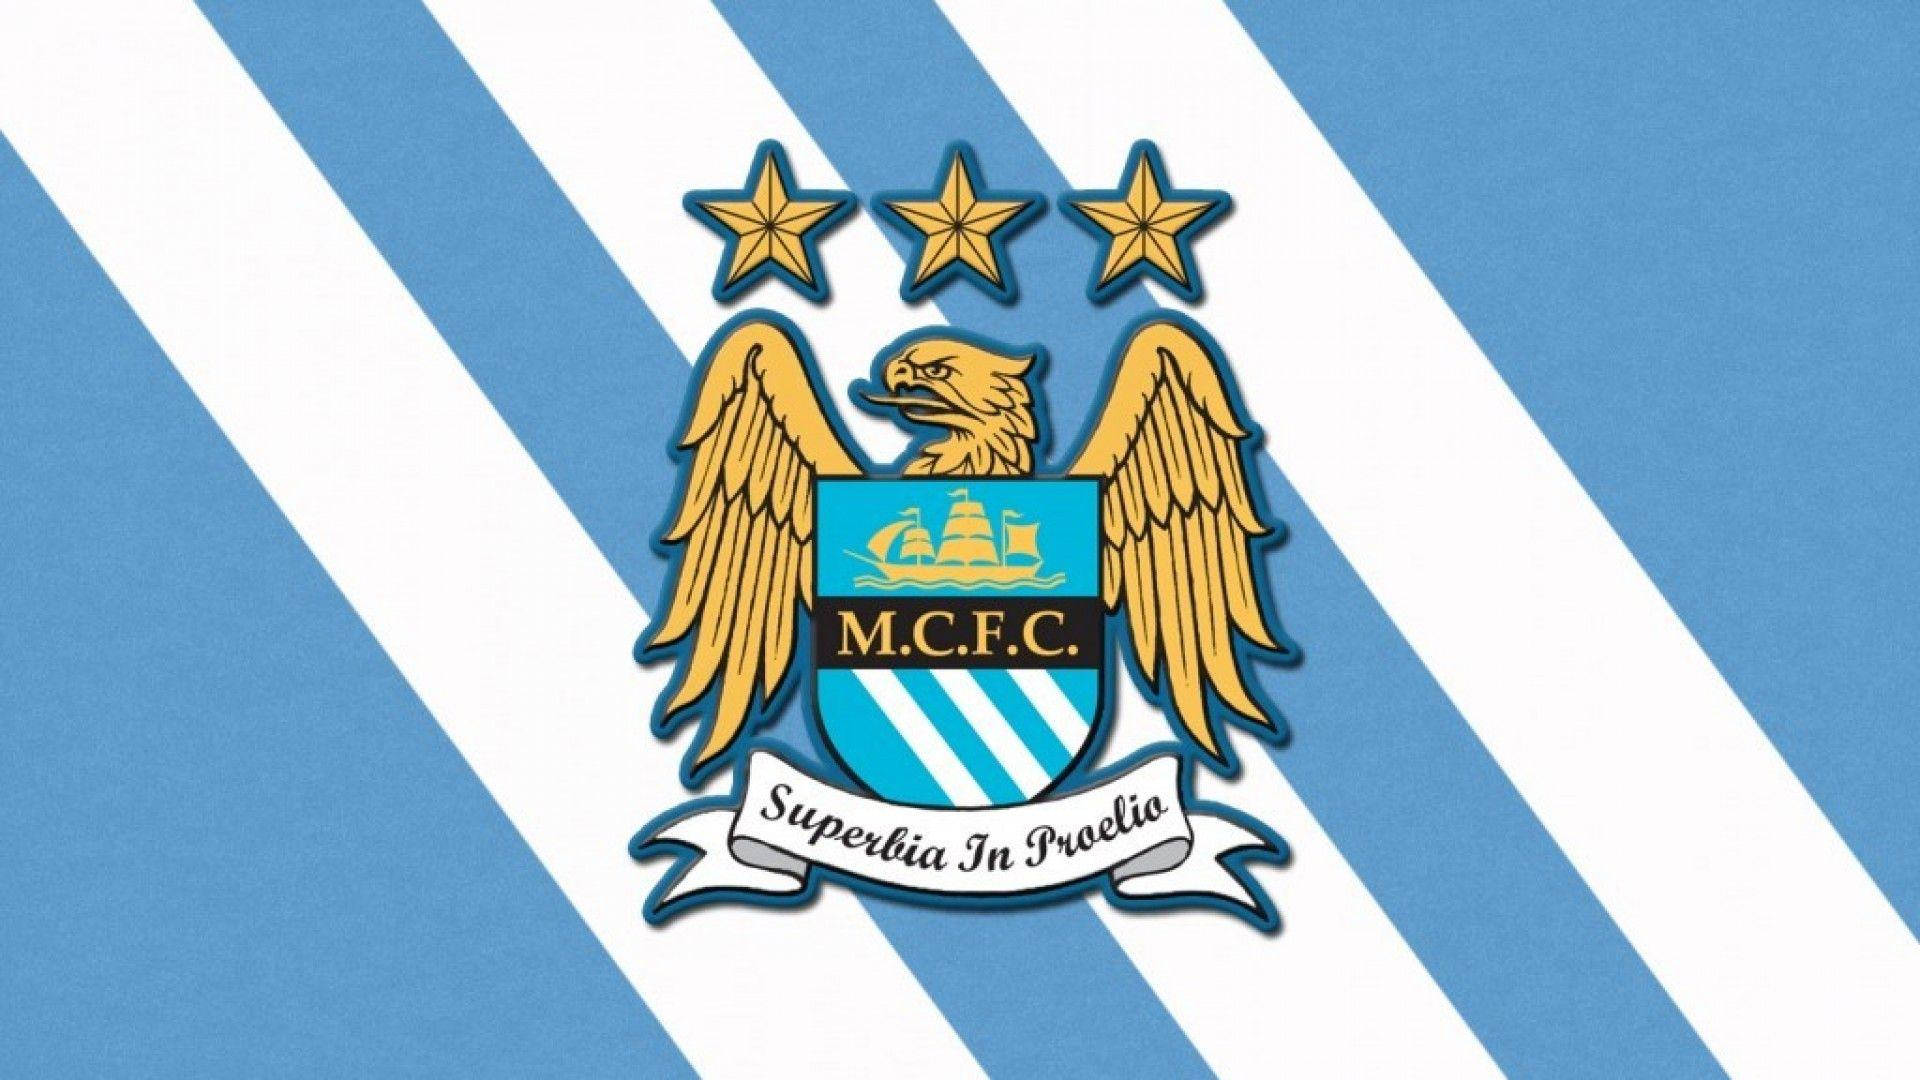 Franjasdiagonales En Azul Y Blanco Del Manchester City Fc. Fondo de pantalla